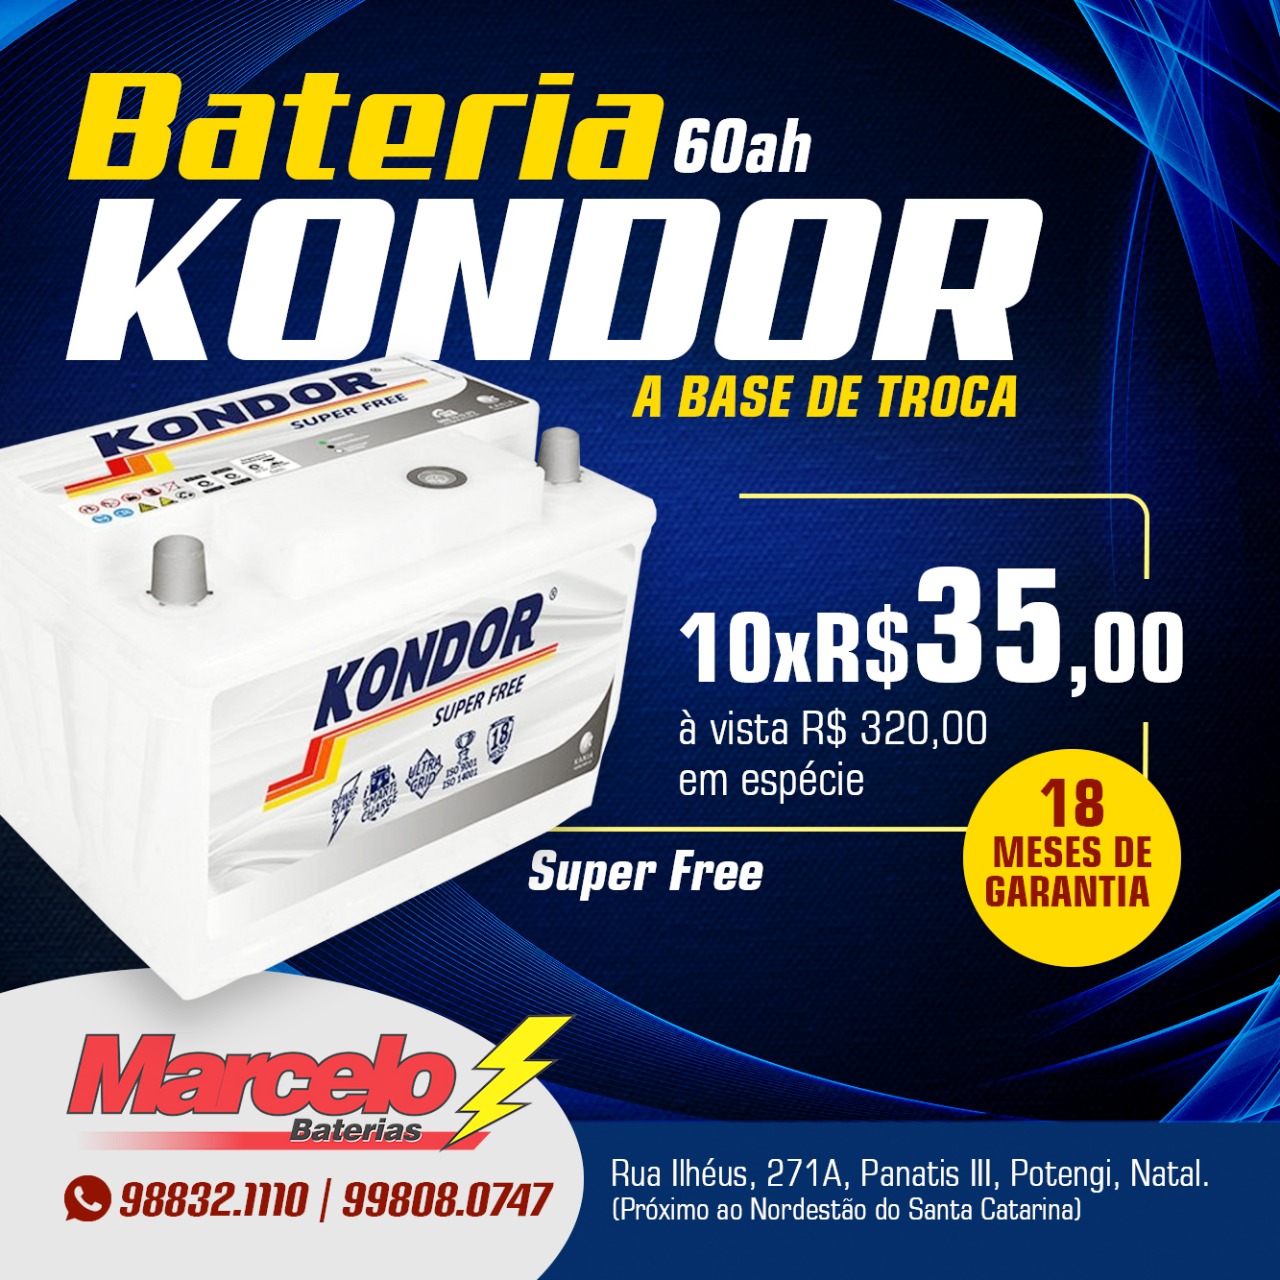 Promoção: Bateria Kondor Super Free 60 ah